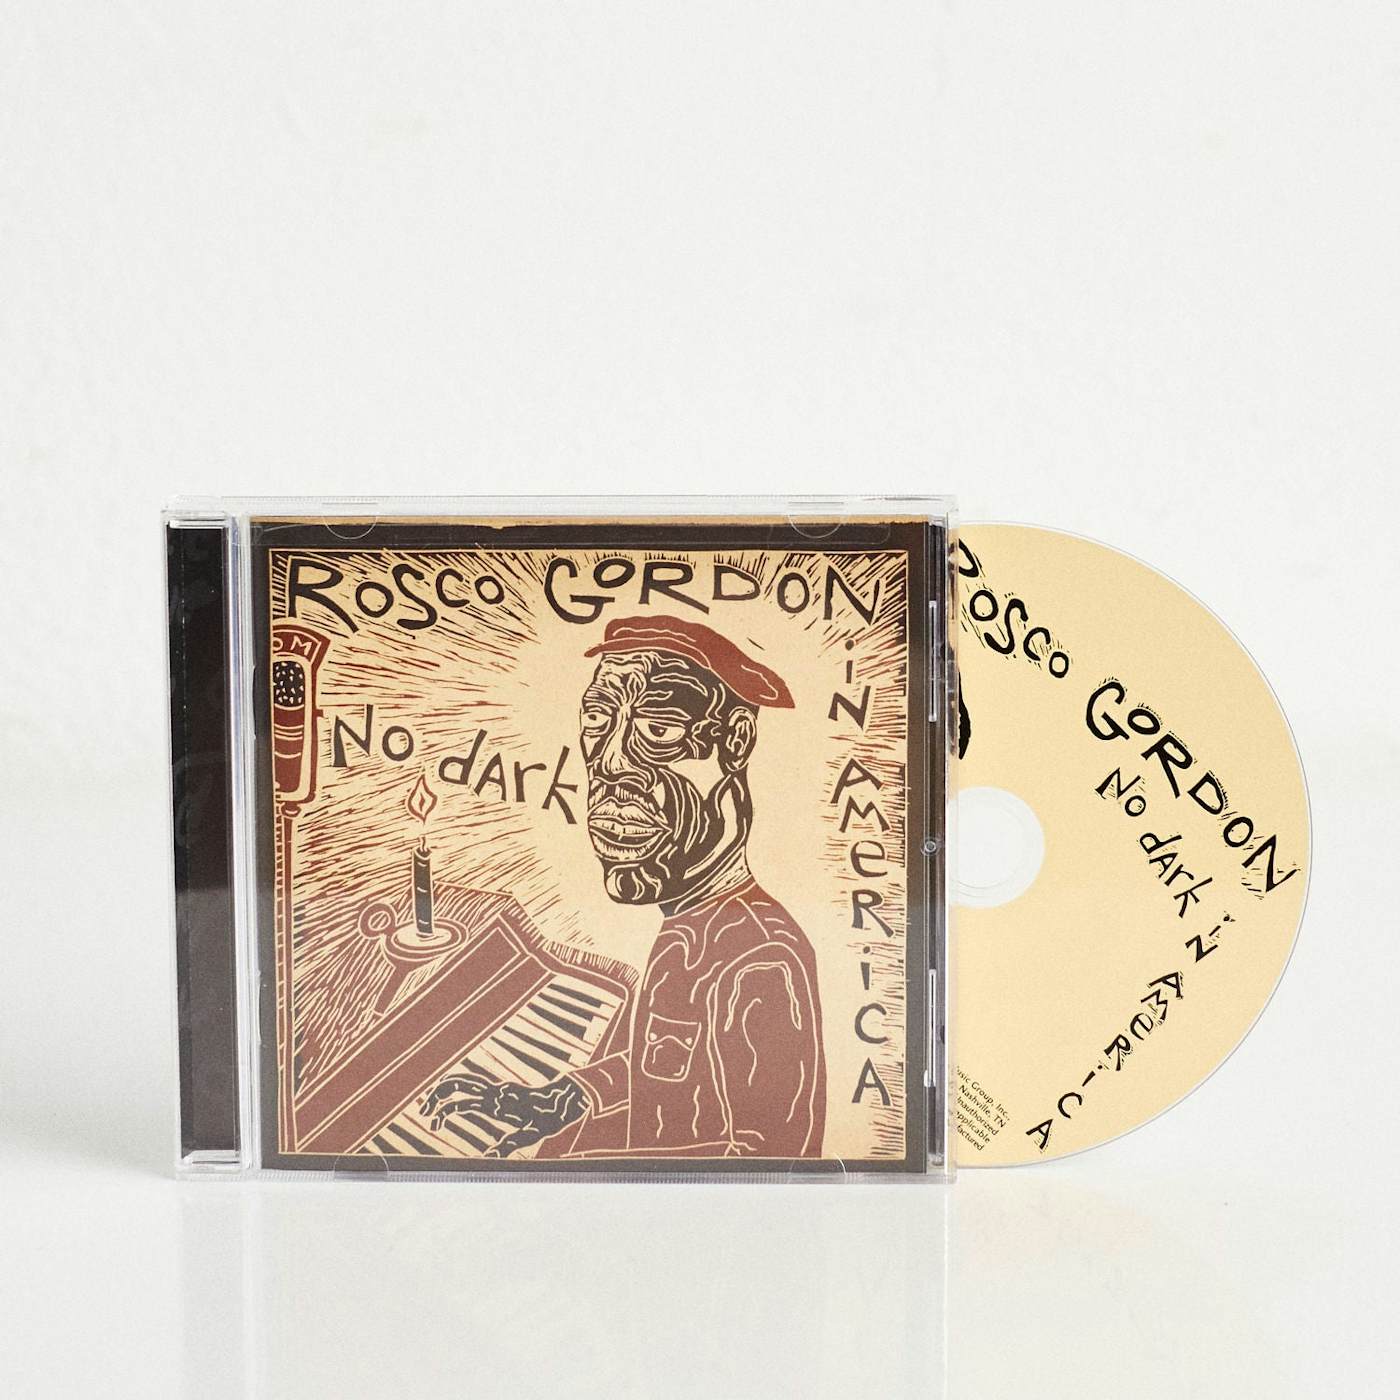 Rosco Gordon No Dark In America (CD)